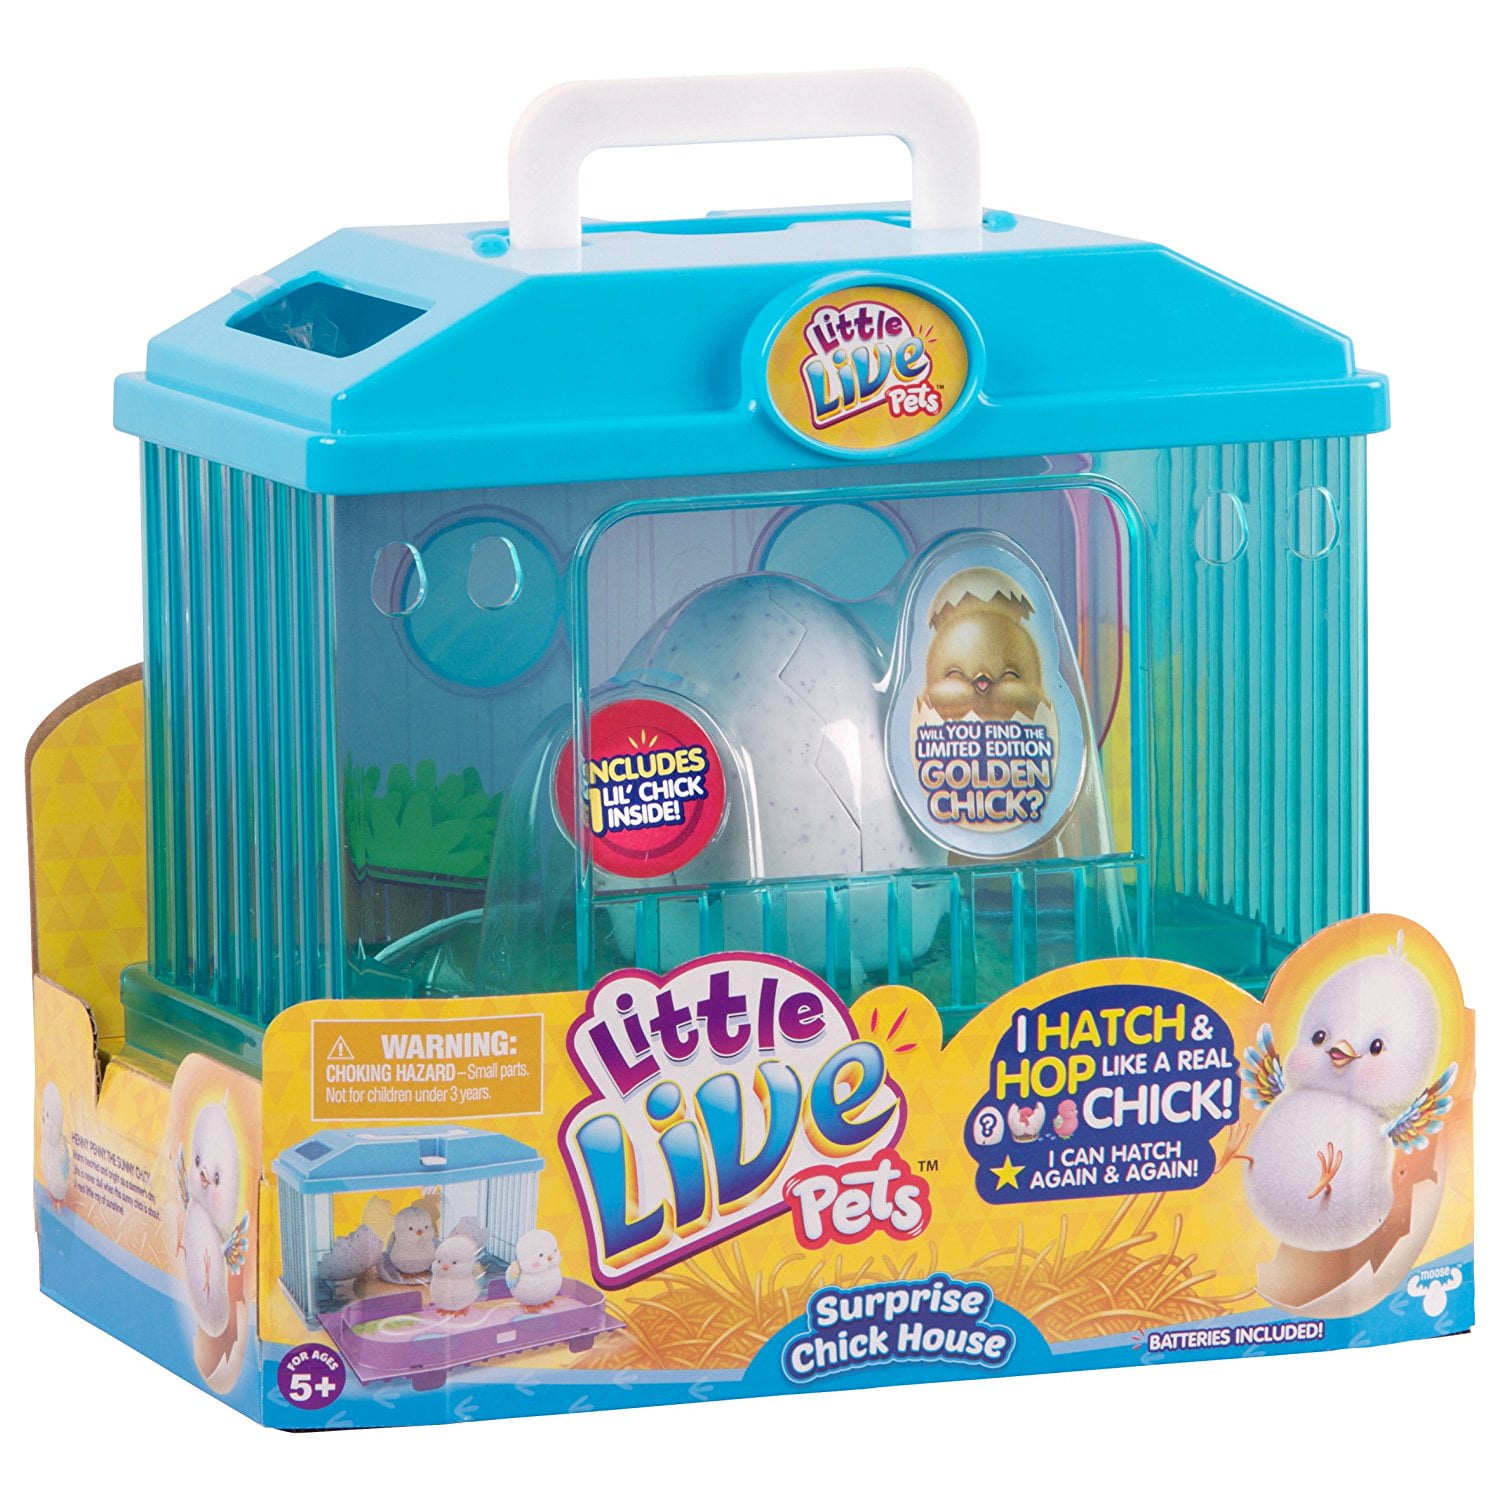 New Little Live Pets Surprise Chick Egg SERIES 2 Hatch & Hop Hatches Again 